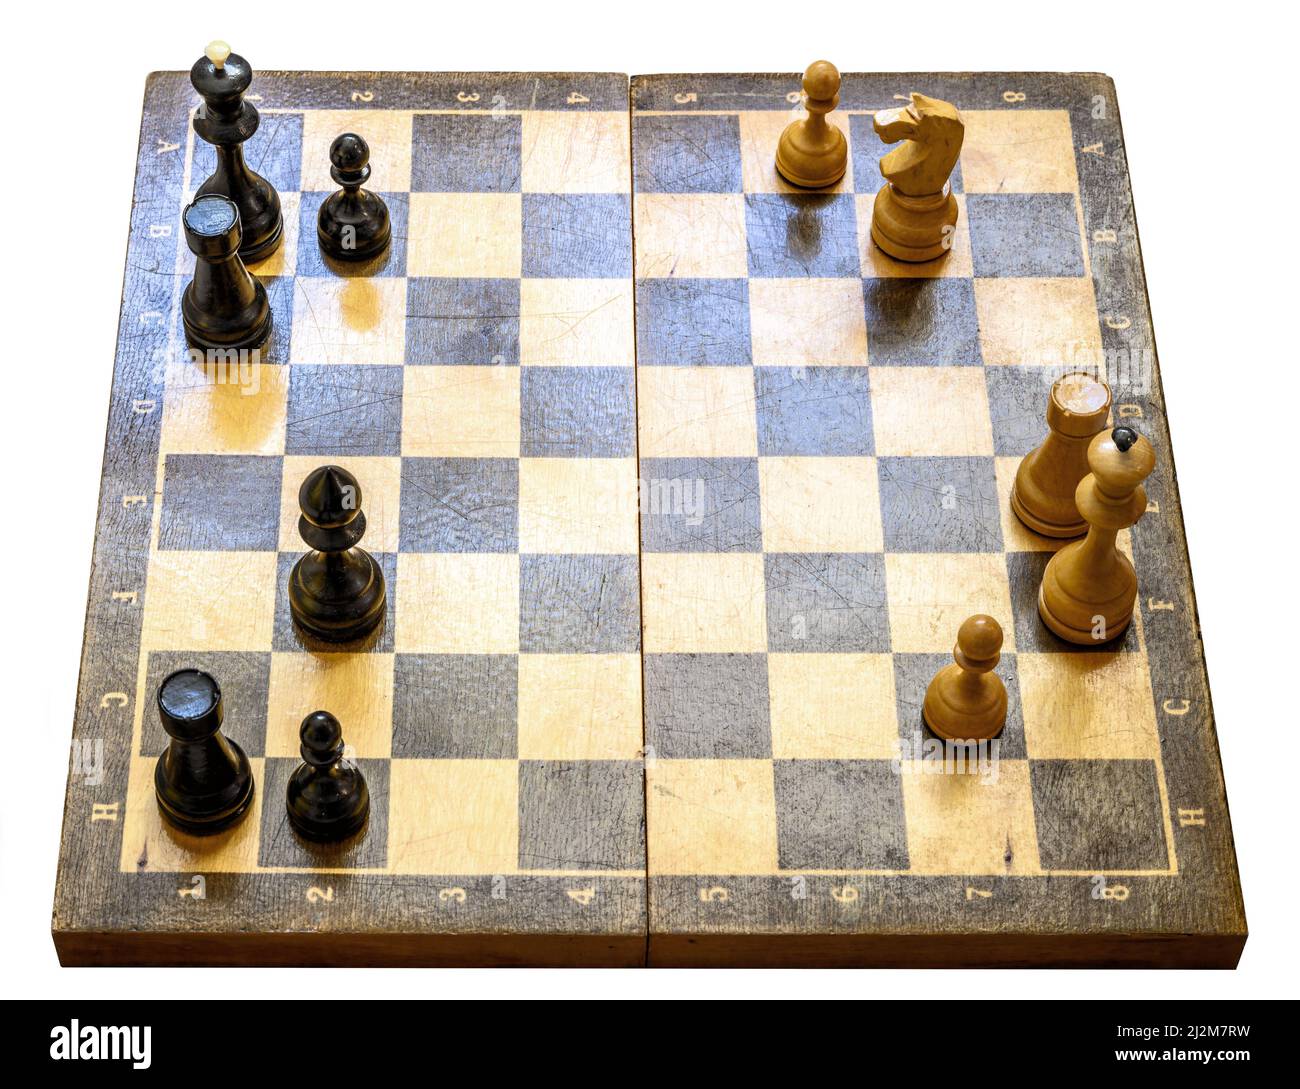 Échiquier avec pièces d'échecs et espace de copie isolé sur fond blanc, vue du dessus du plateau d'échecs pendant le jeu. Concept de stratégie d'échecs, dessiner, Banque D'Images